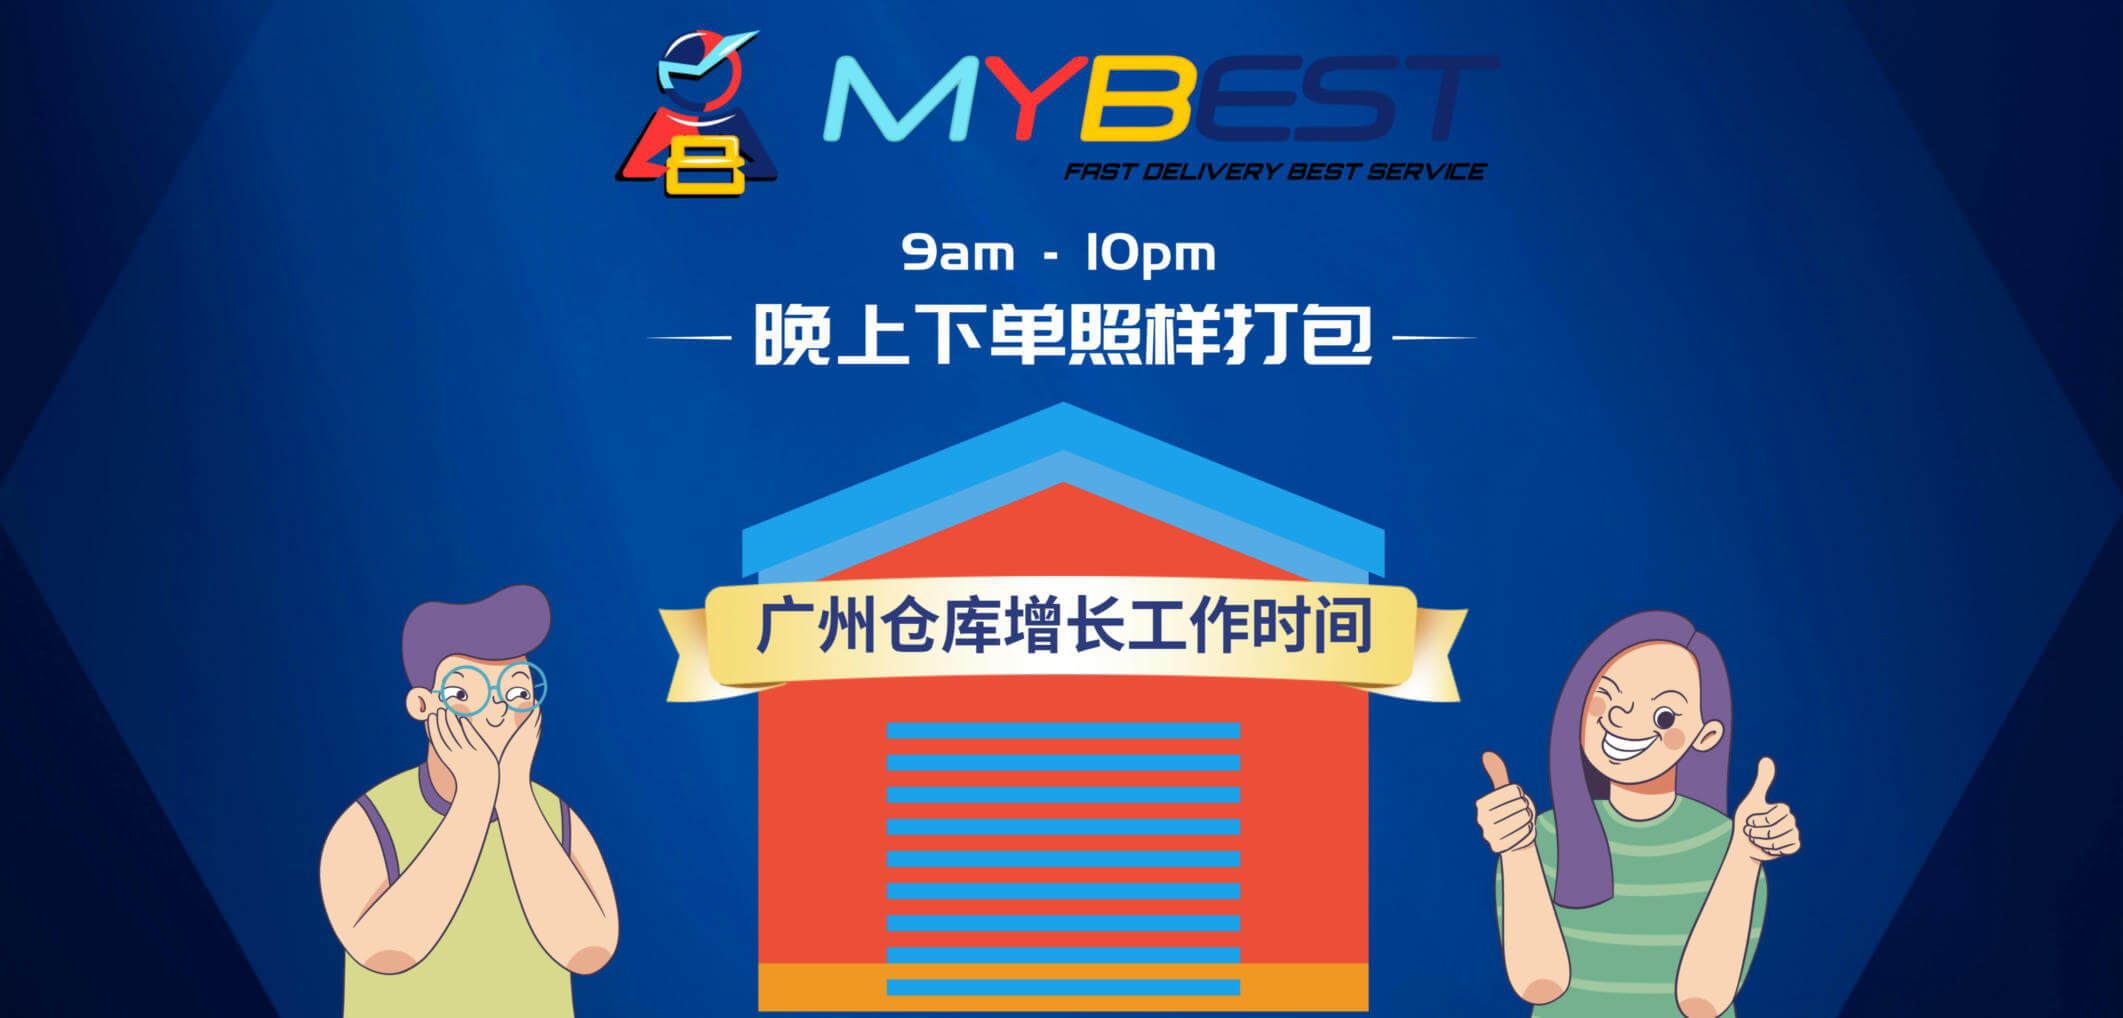 MYBEST广州仓库工作时间表 | 马来西亚客服上班时间 - MYBEST营业时间 每日空运海运出货时间